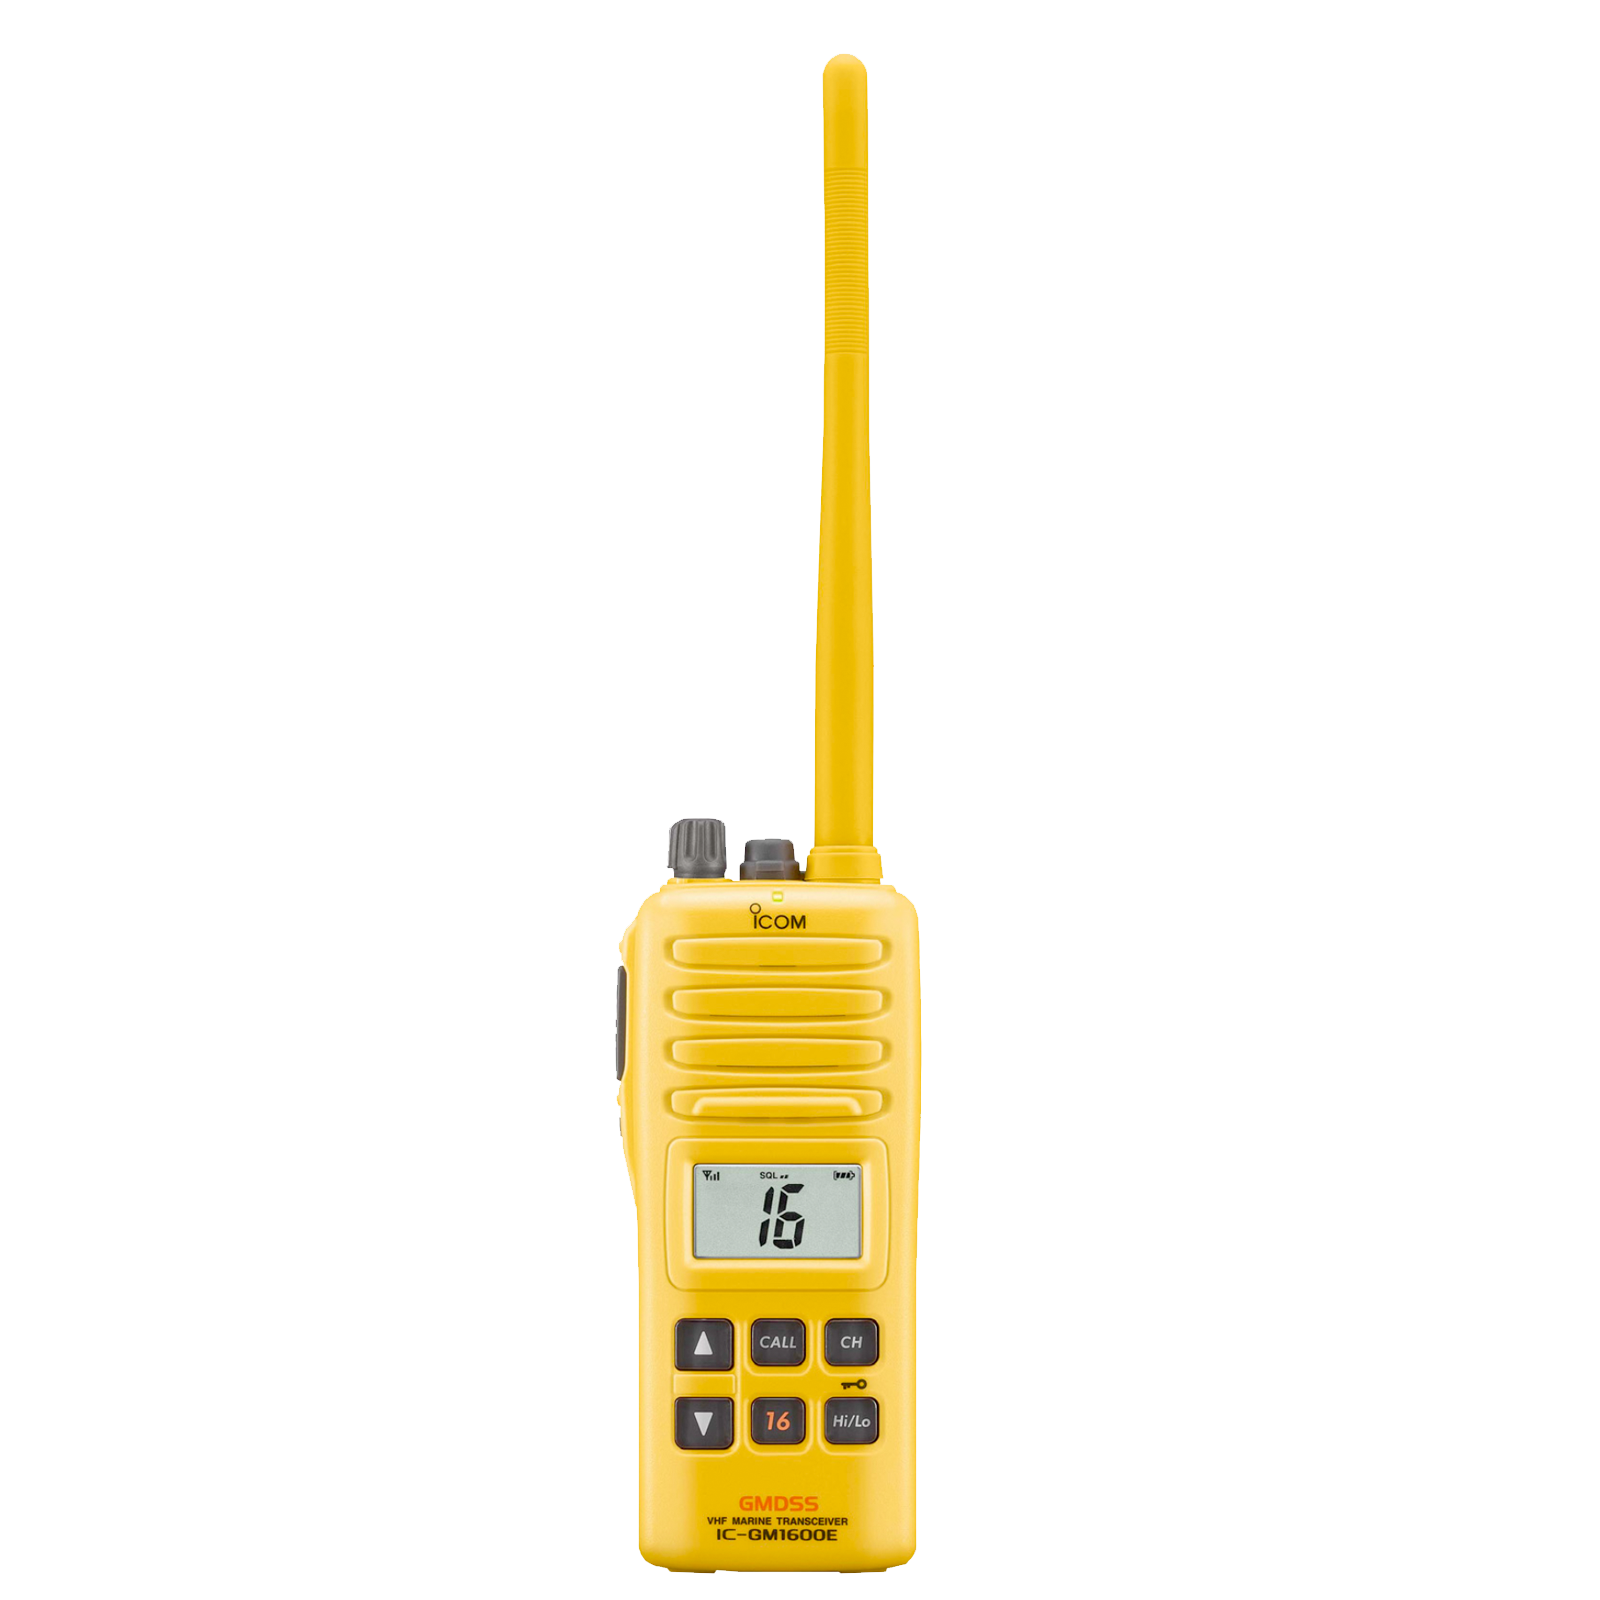 Telestar System Telecomunicazioni Roma Radio GMDSS ICOM per la comunicazione in barca adatte a qualsiasi tipo di esigenza nautica